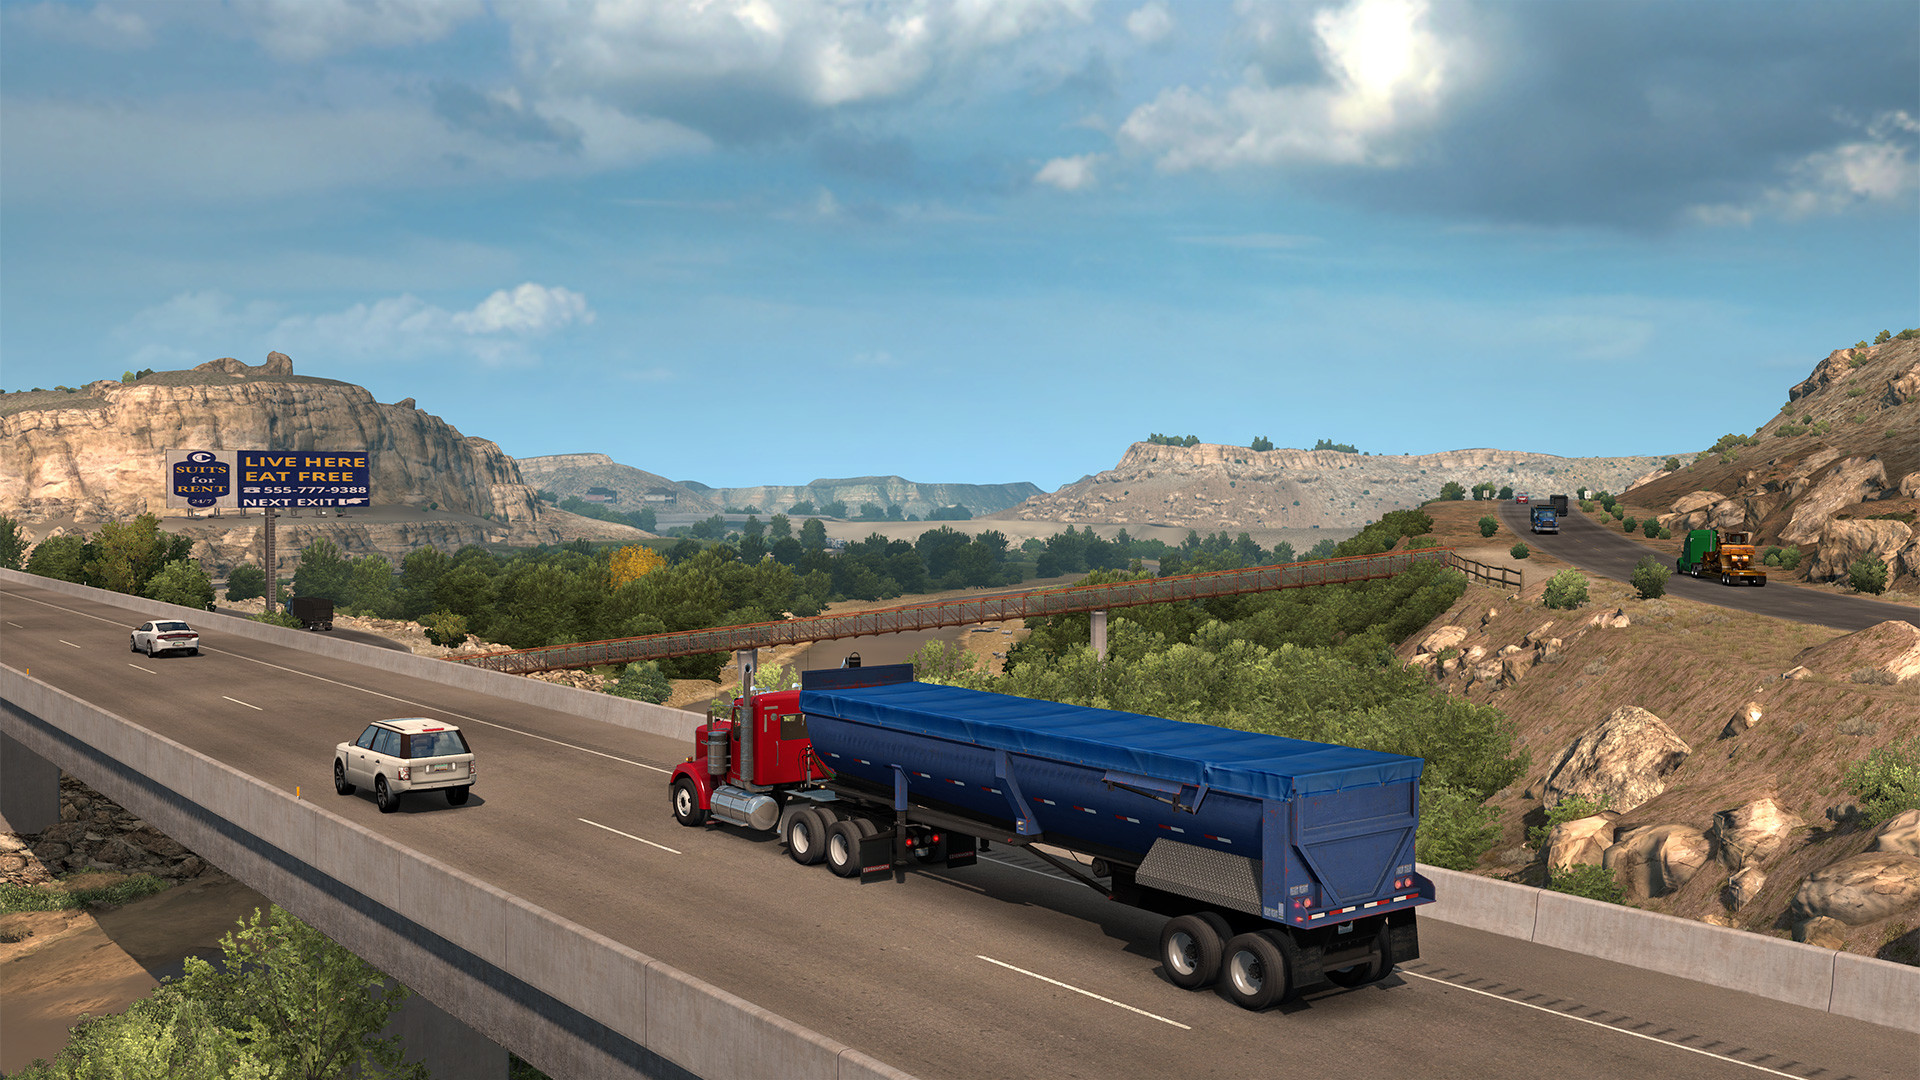 American truck simulator free download mac